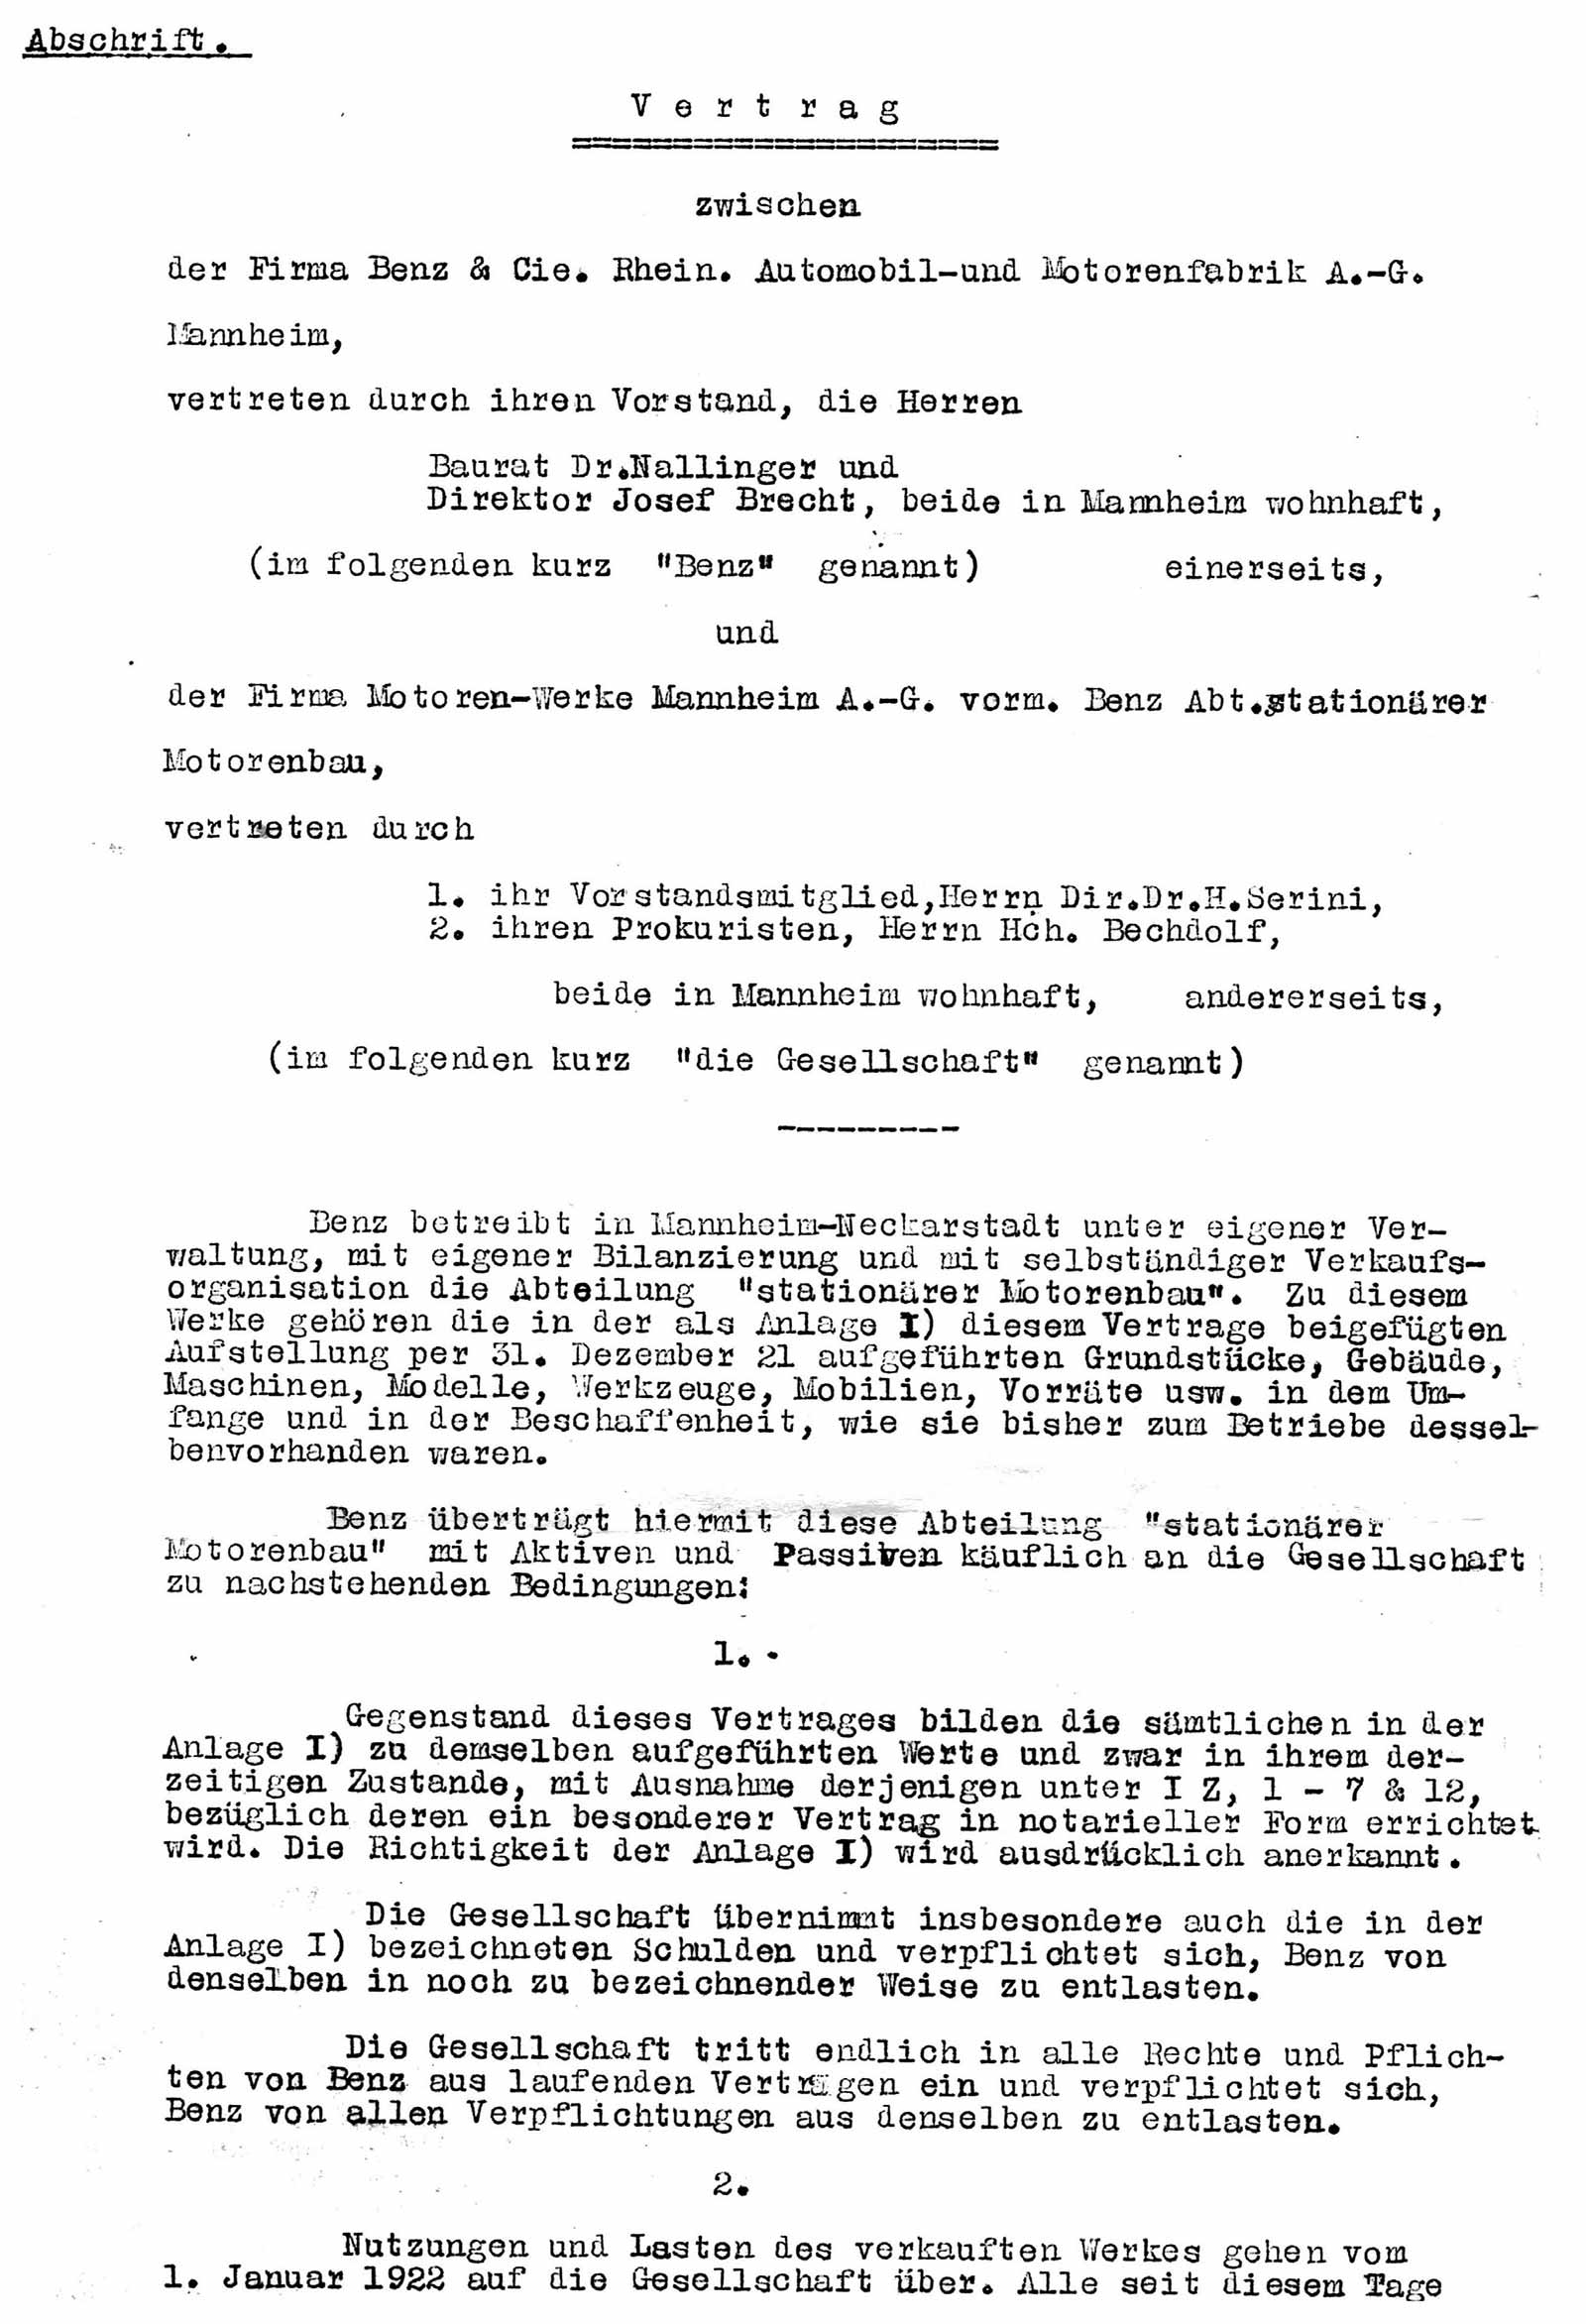 Auszug aus der Vertragsabschrift vom 22.04.1922 bezüglich Benz & Cie. und MWM AG